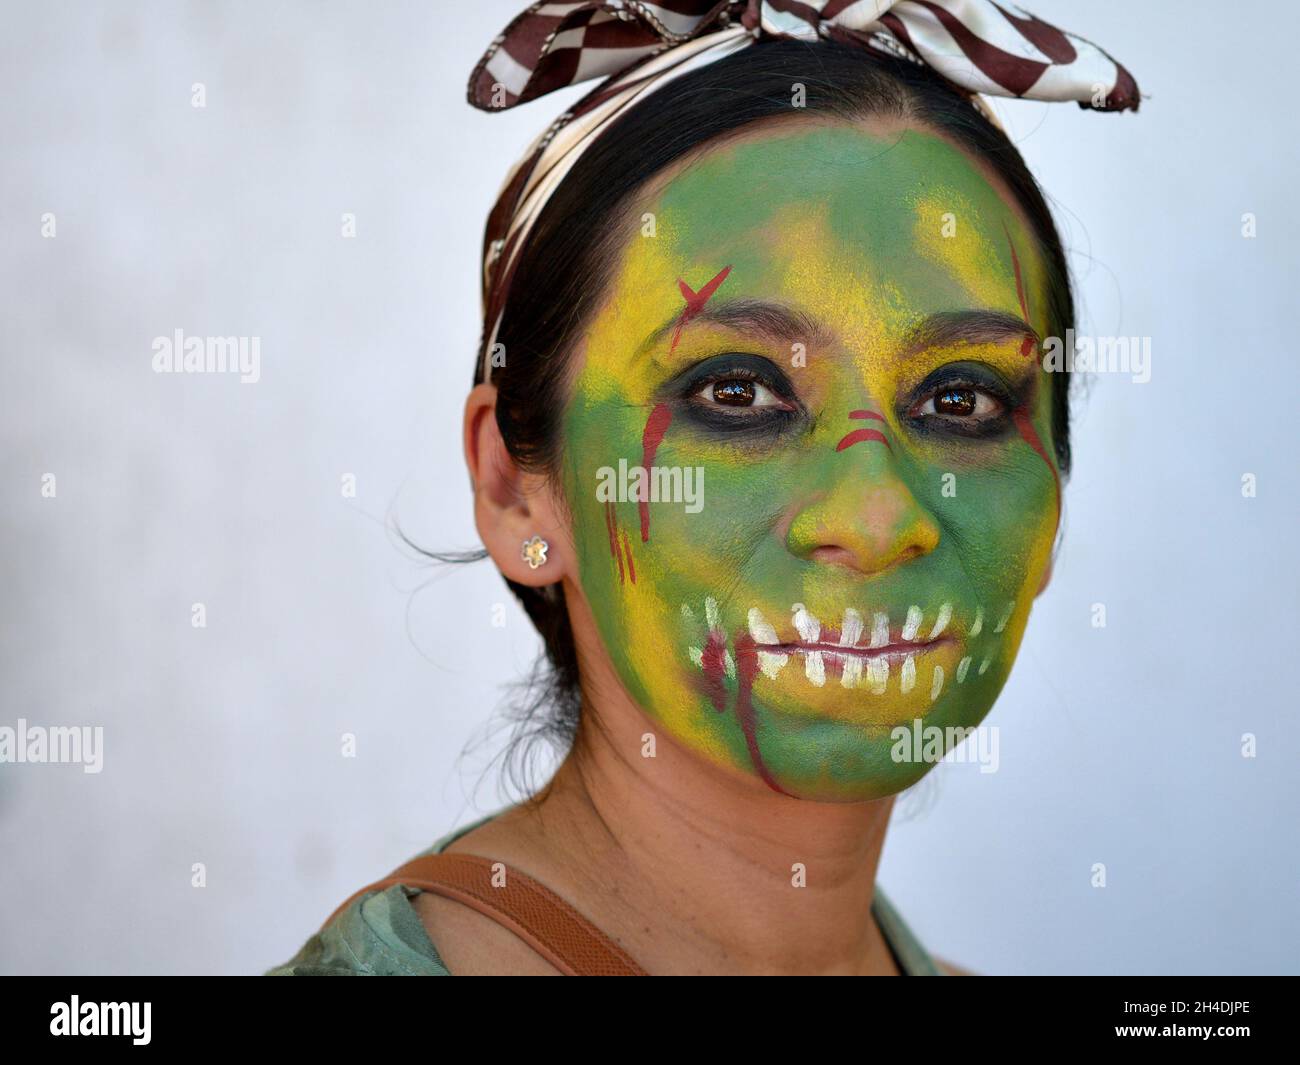 Die junge mexikanische Yucatecan-Frau mit grün gemaltem Zombie-Gesicht schaut den Zuschauer für den Tag der Toten (Dia de los Muertos) an. Stockfoto